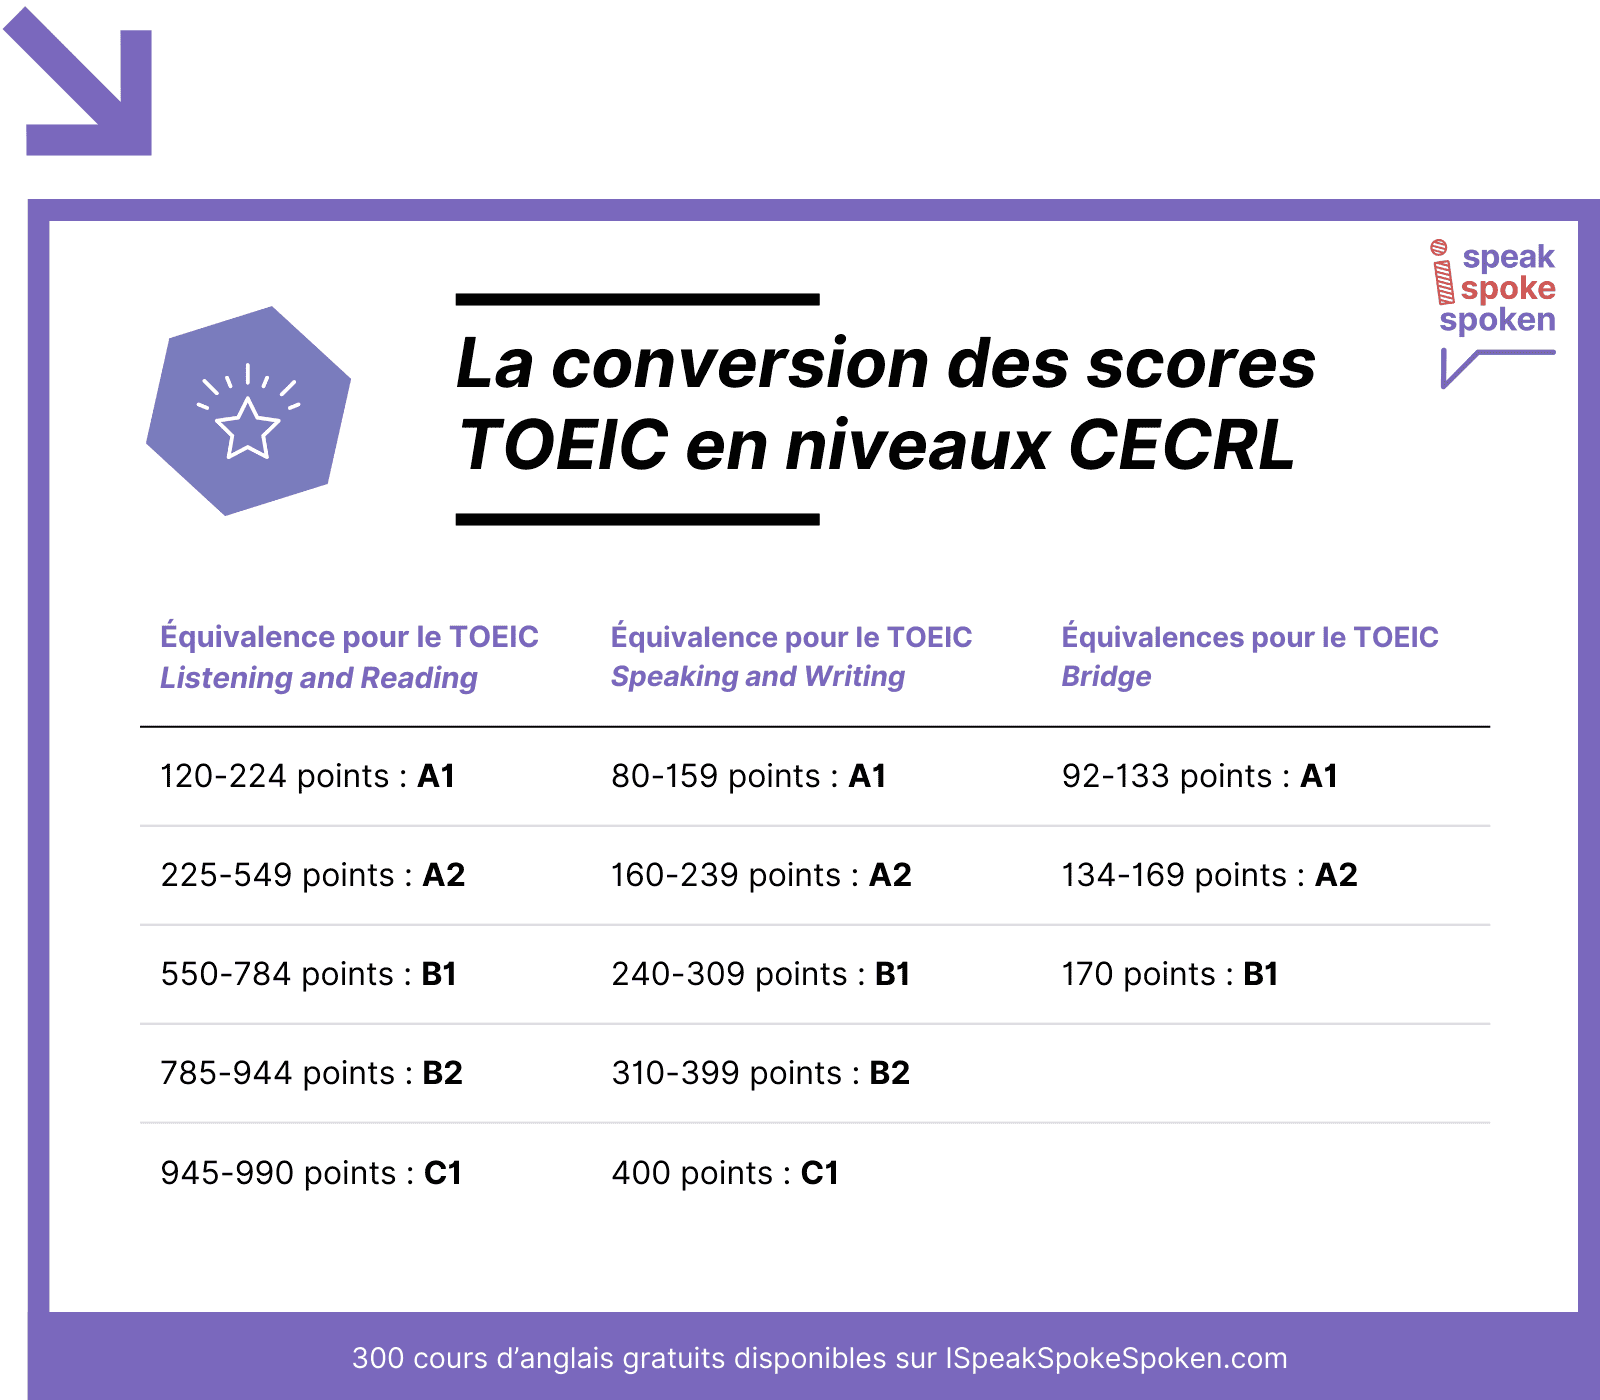 La conversion des scores toeic en niveaux CECRL